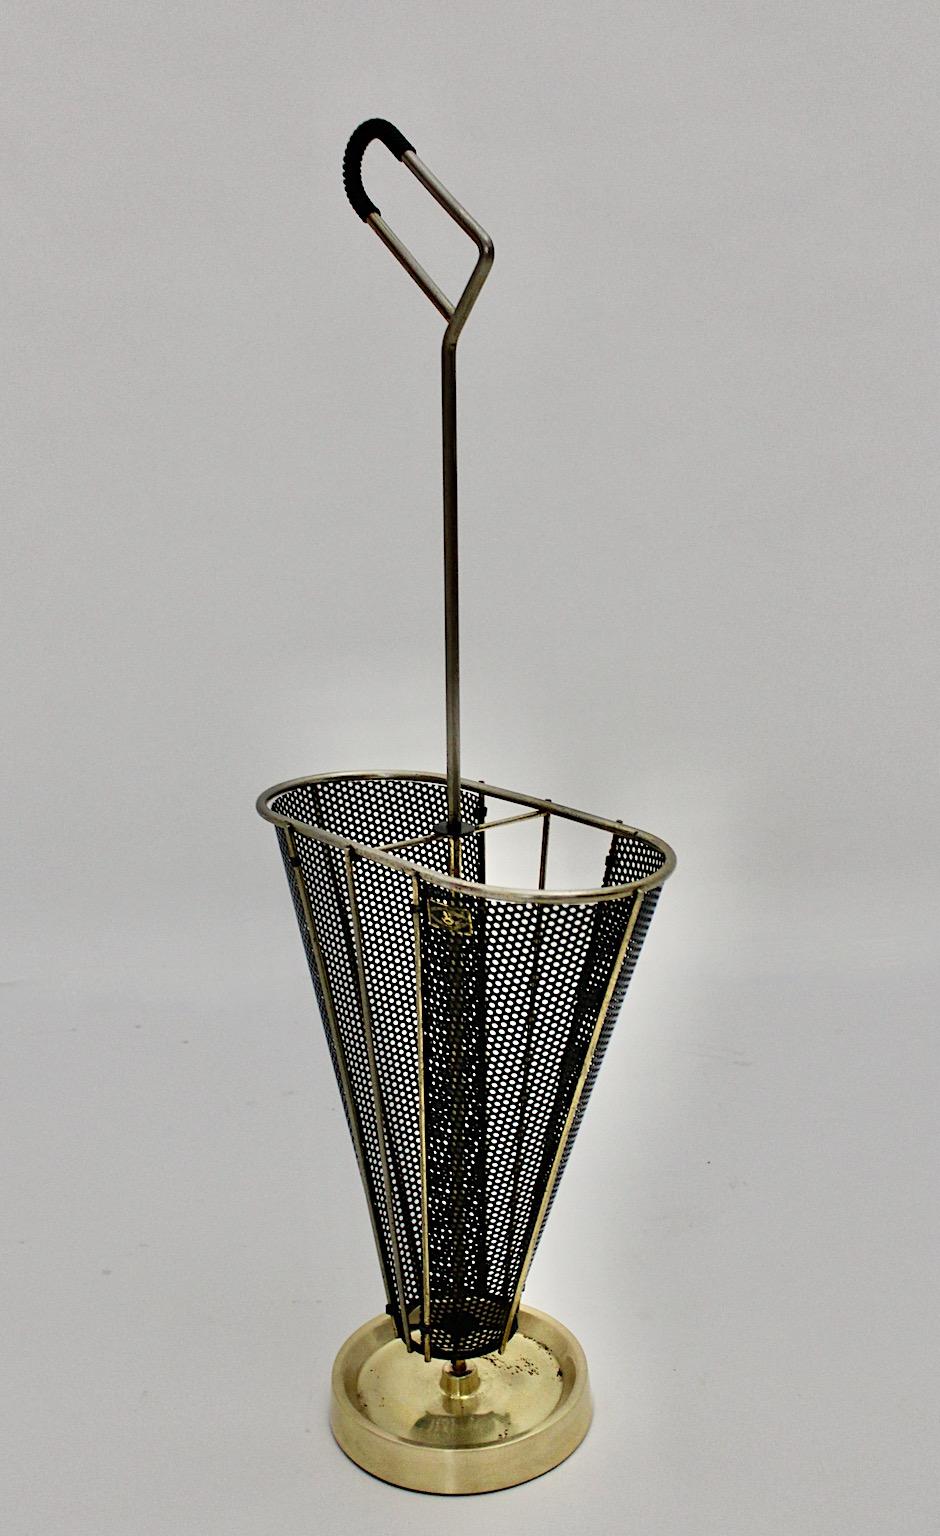 Porte-parapluies vintage Mid-Century Modern en métal laqué noir, laiton et plastique, Allemagne des années 1950.
Un superbe porte-parapluies dans les tons noir et doré des années 1950, conçu et fabriqué en Allemagne.
Alors que le corps de forme